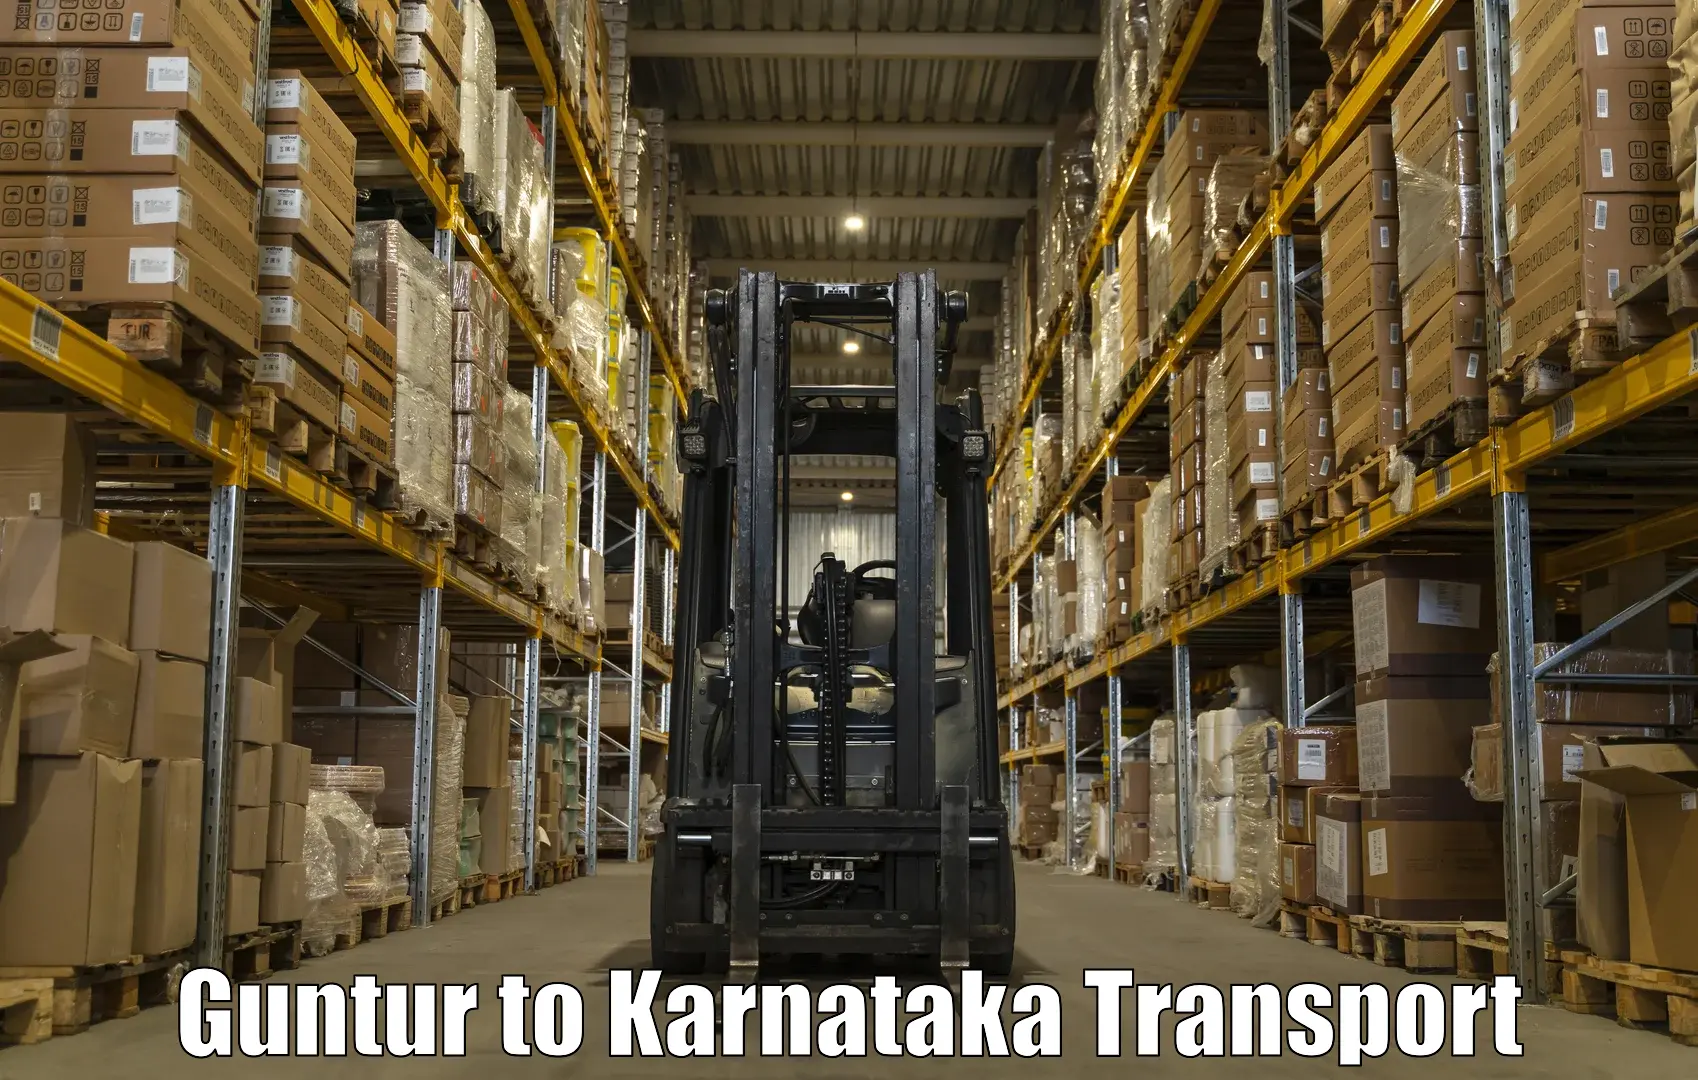 Delivery service Guntur to Ramanagara